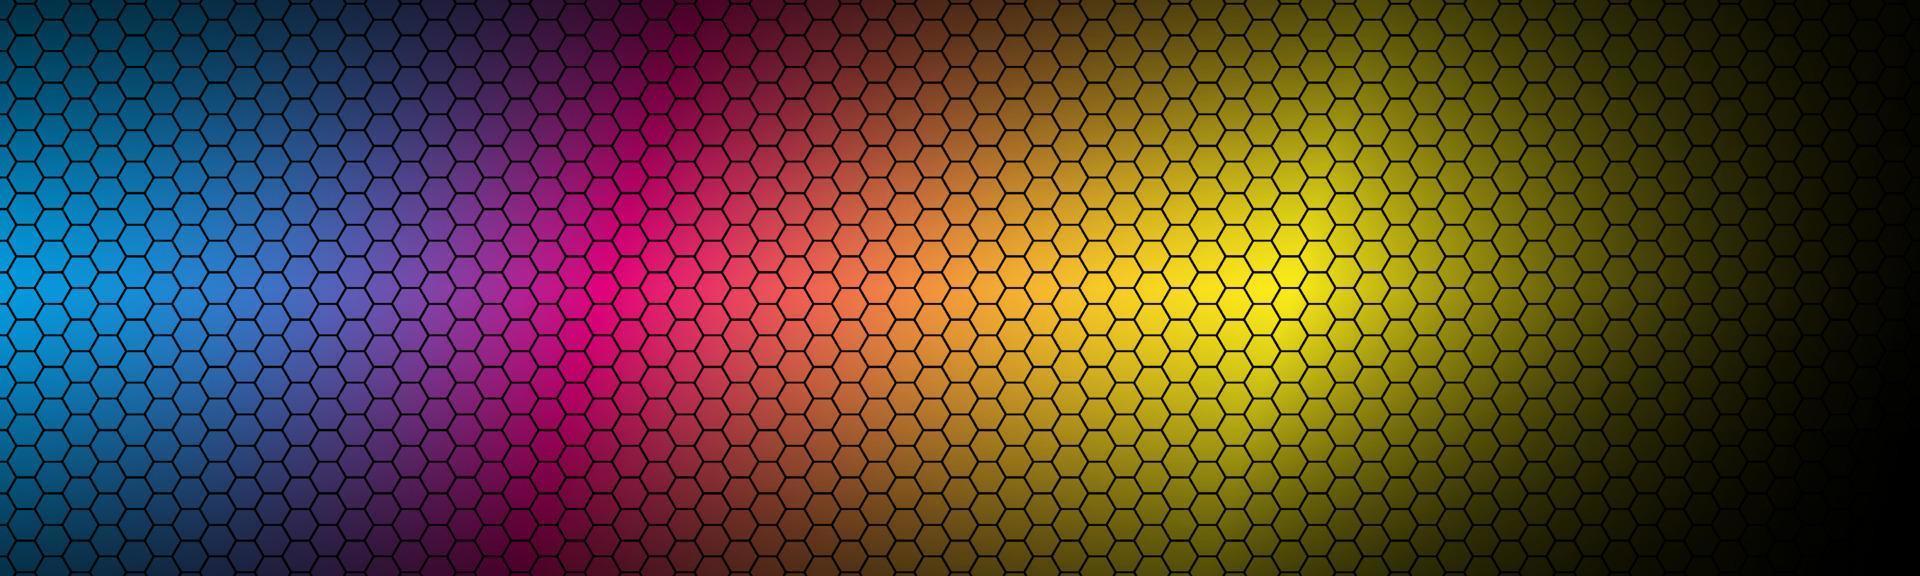 modern hög upplösning cmyk geometrisk rubrik med polygonal rutnät. abstrakt färgrik metallisk hexagonal mönster. enkel vektor baner